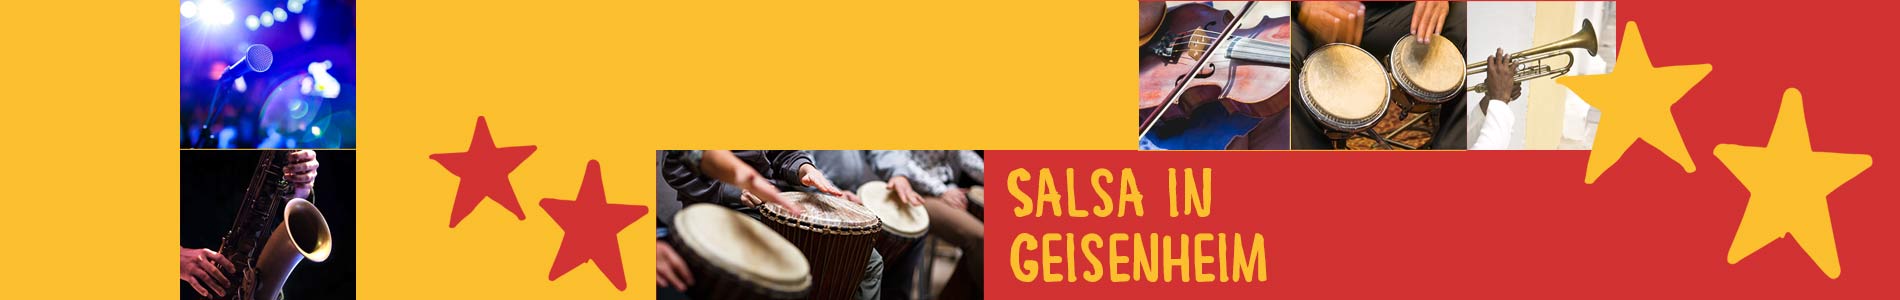 Salsa in Geisenheim – Salsa lernen und tanzen, Tanzkurse, Partys, Veranstaltungen